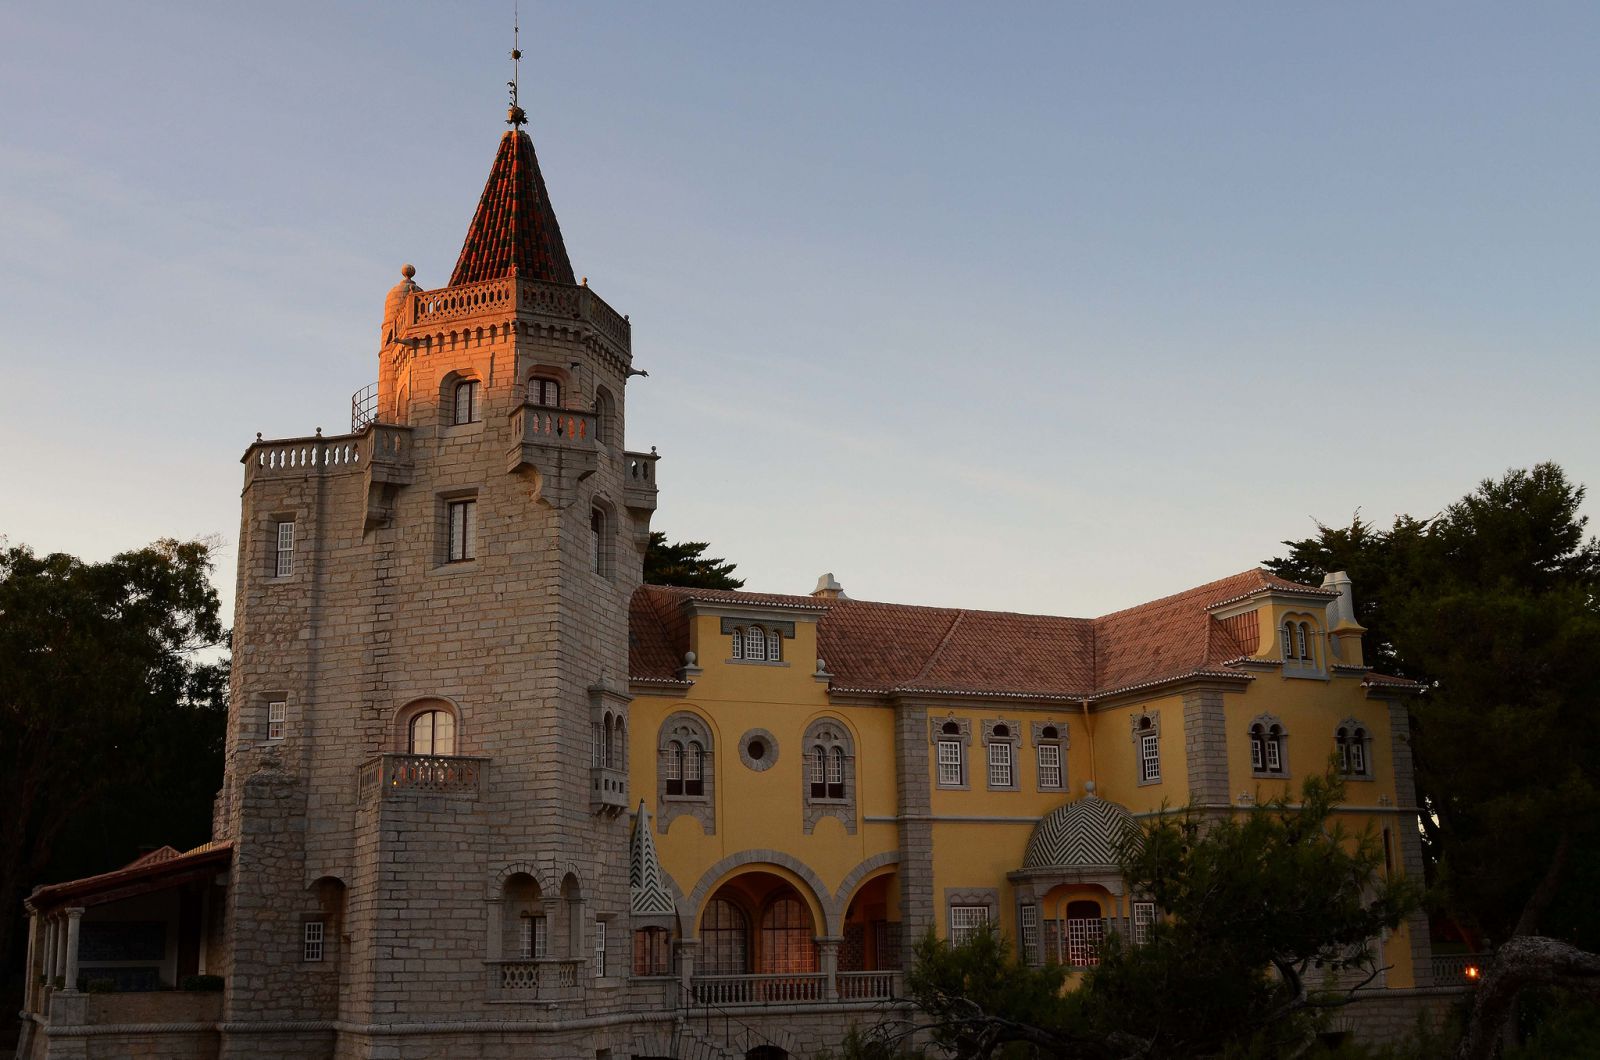 Дворец графа Кастро Гимарайнш на закате - Кашкайш, Португалия фото #32754